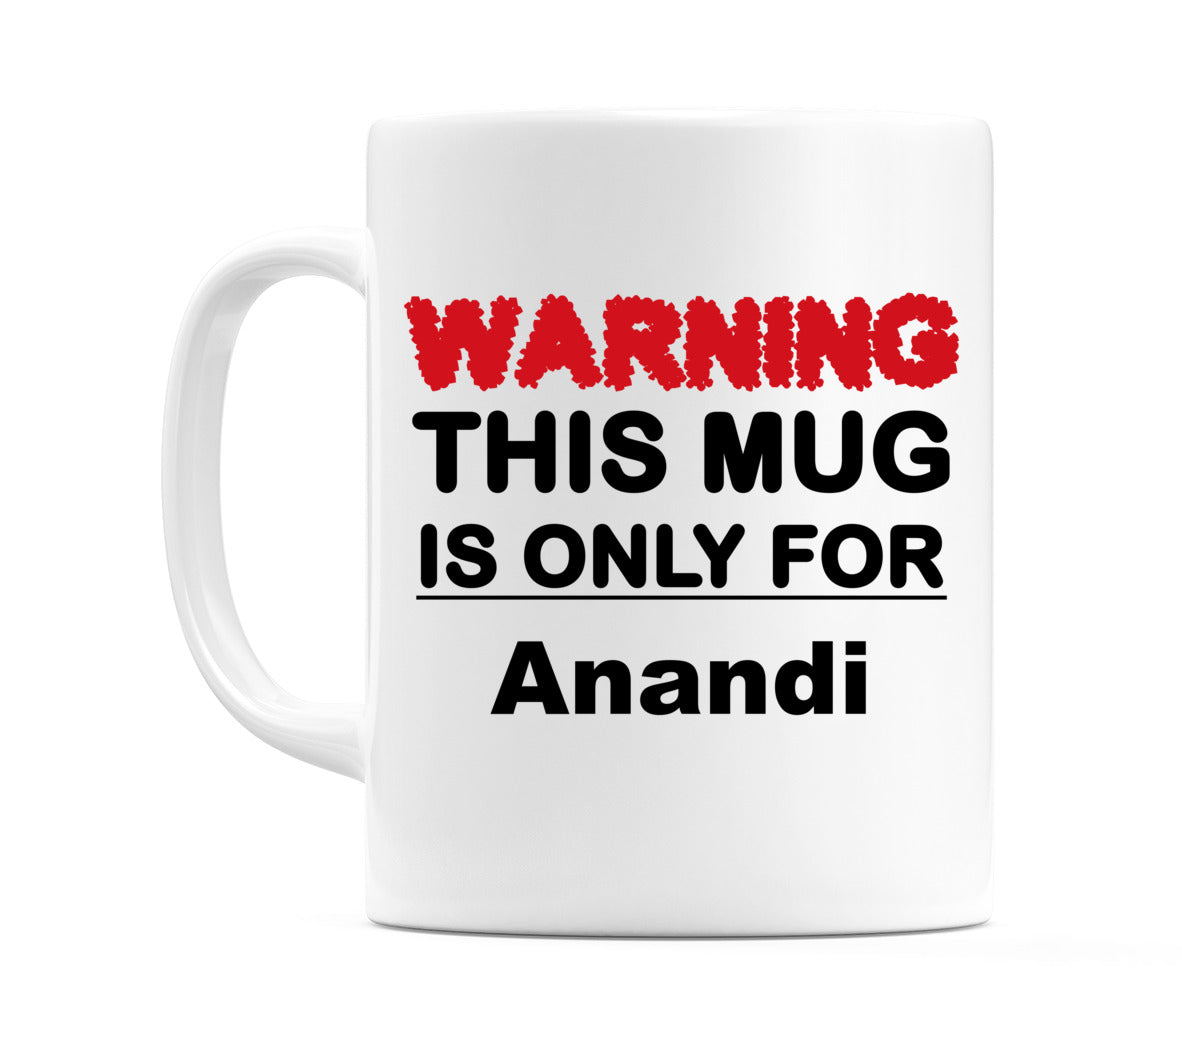 Warning This Mug is ONLY for Anandi Mug